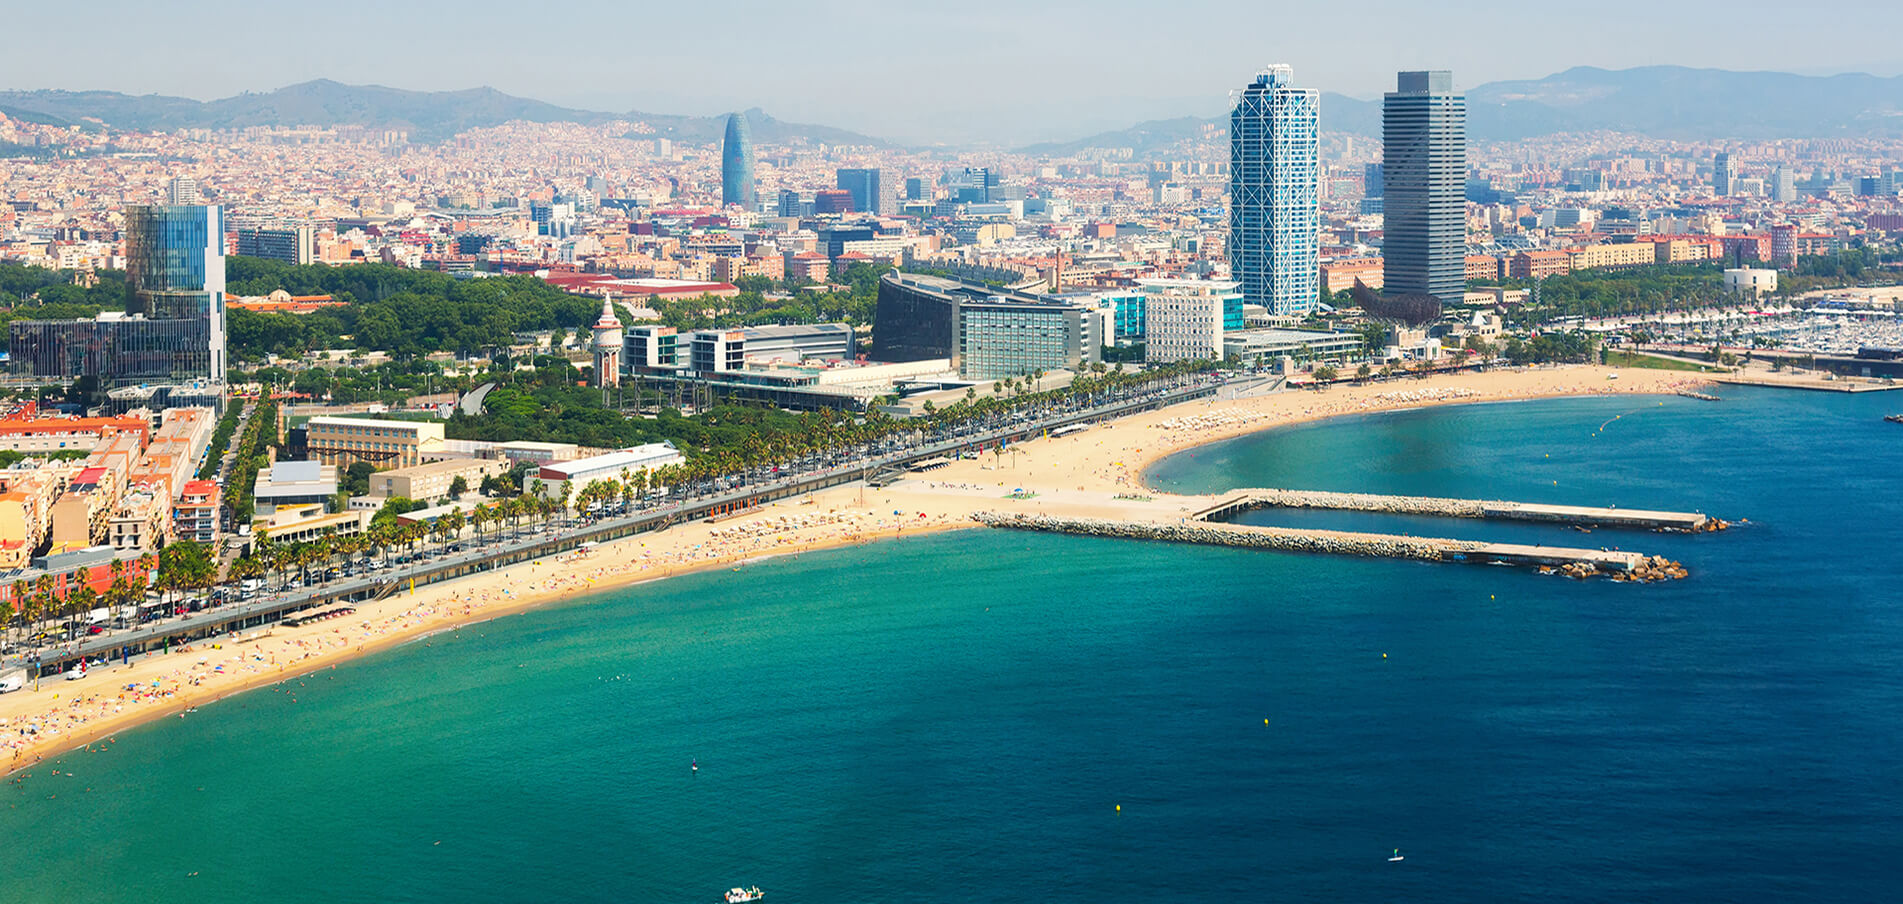 Charter di Superyacht Barcellona